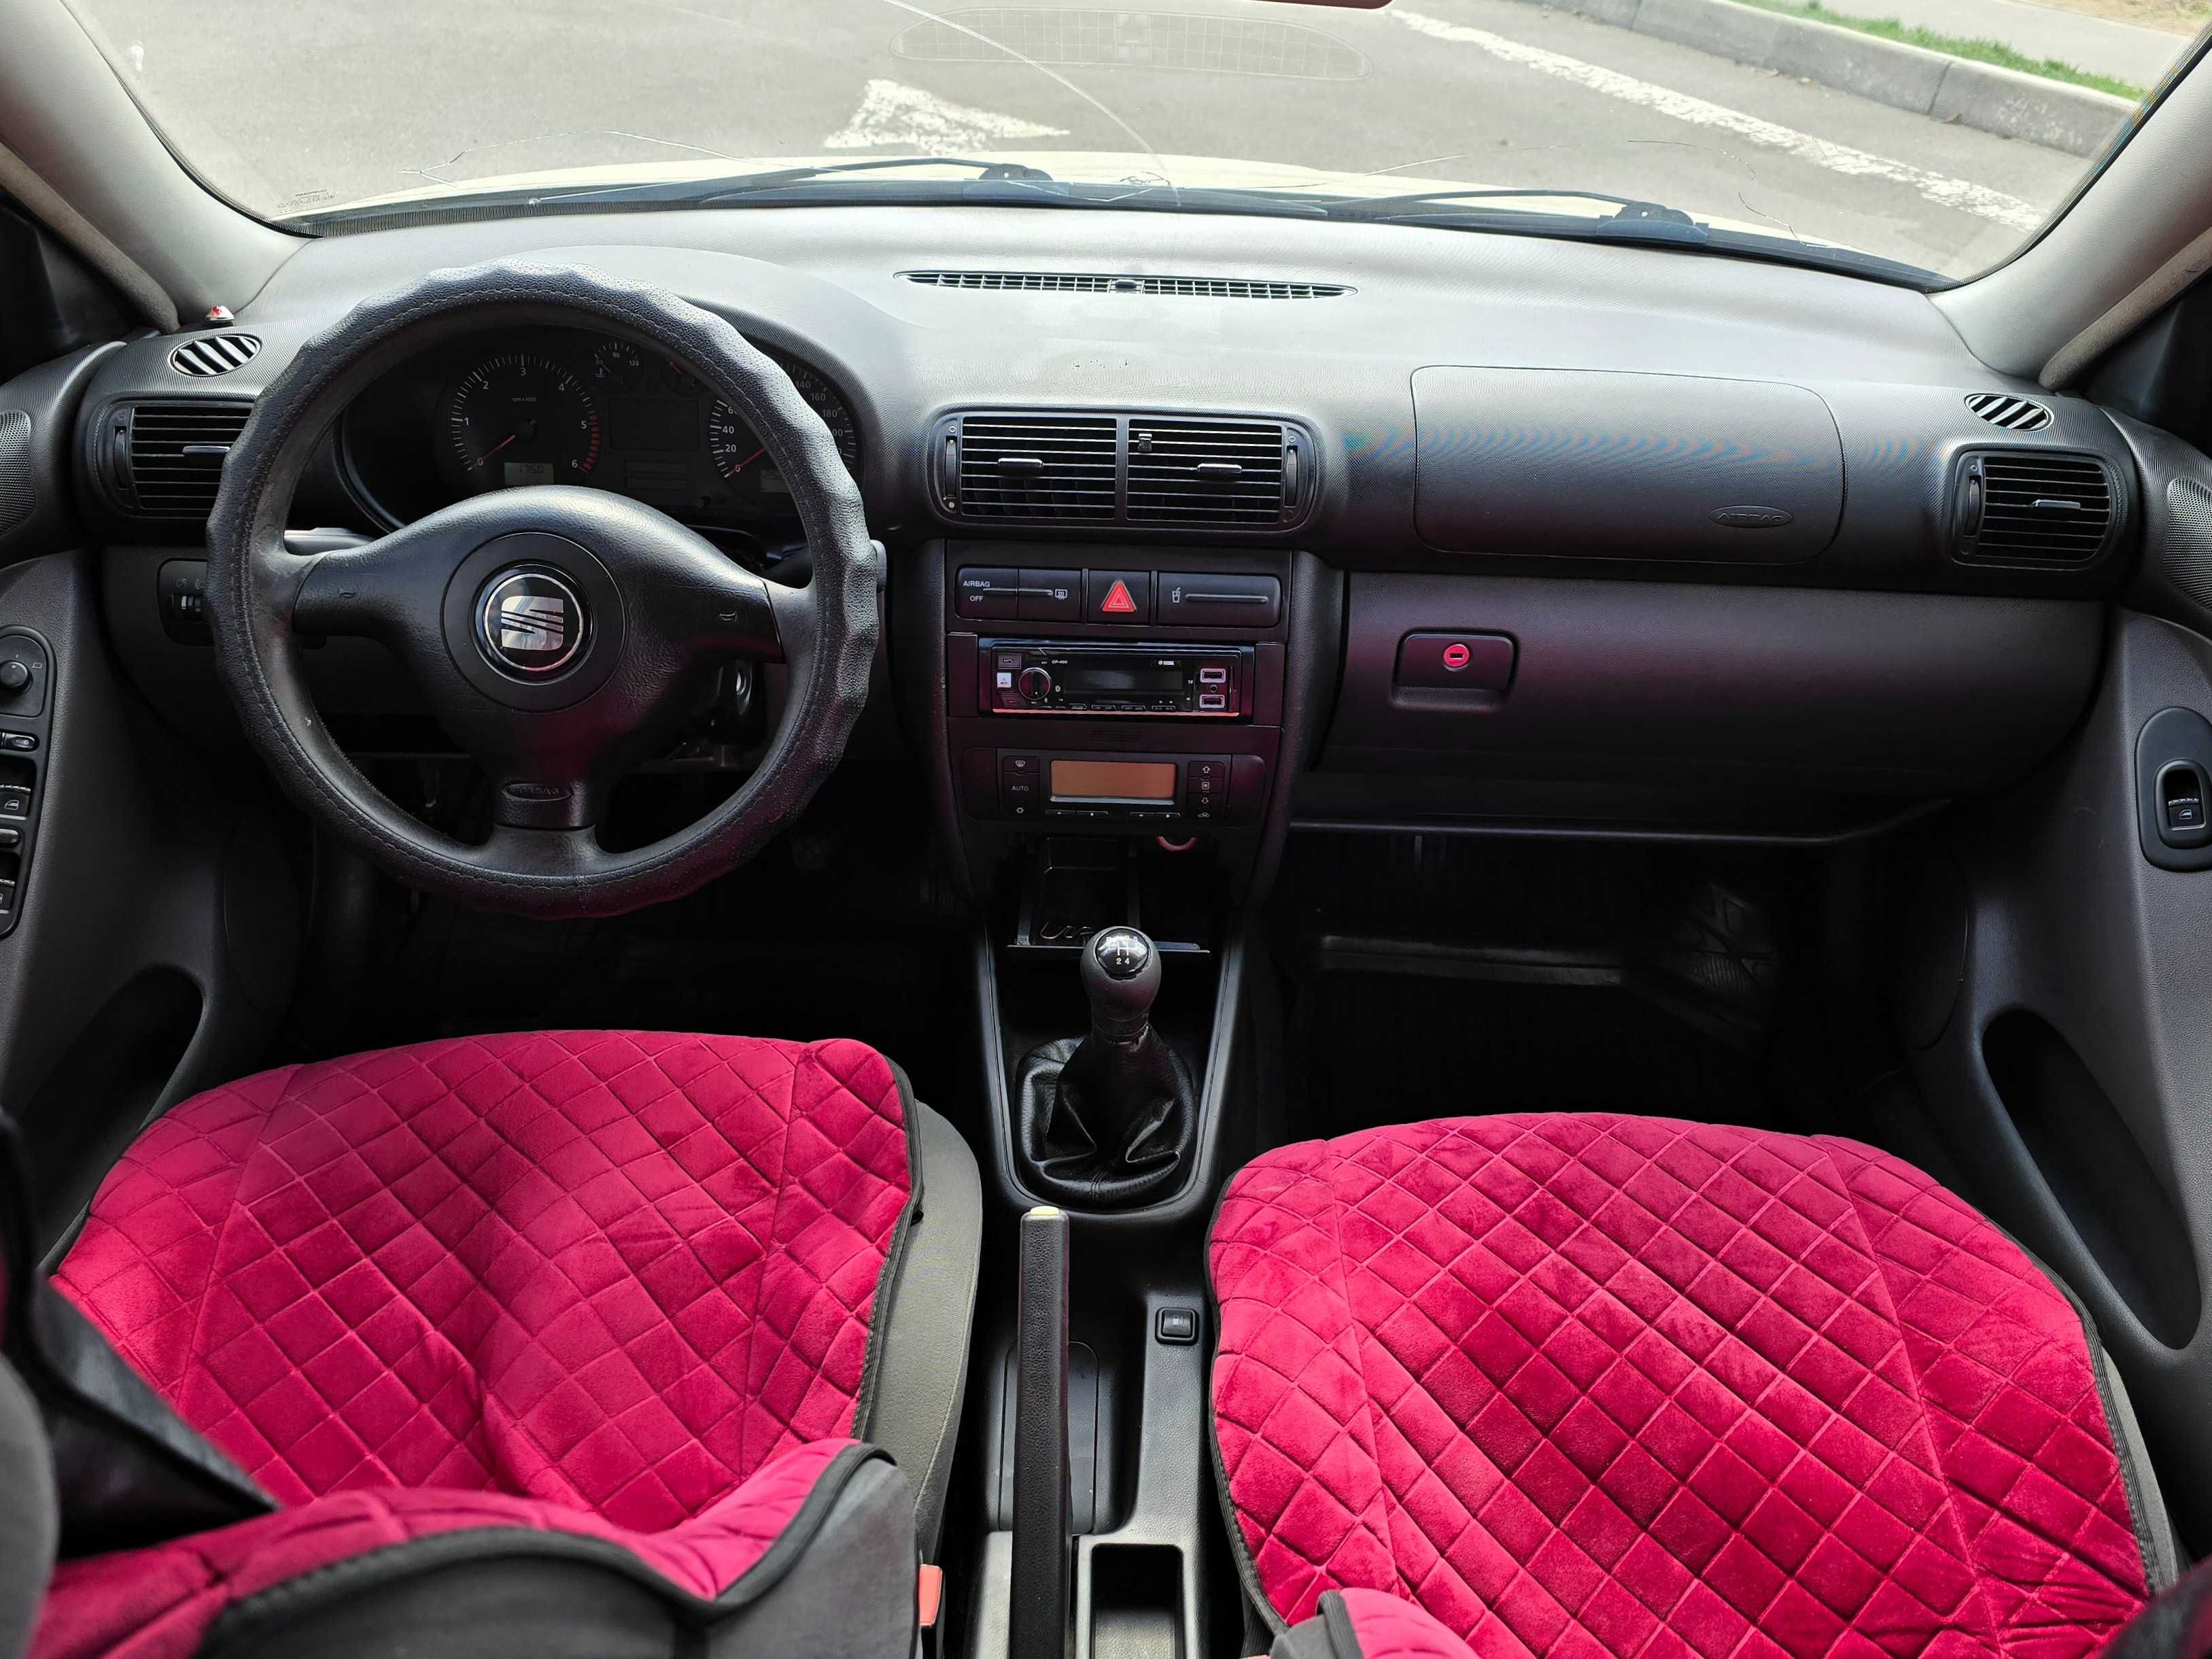 SEAT Toledo 2002г.в. 1.9 дизель, механика